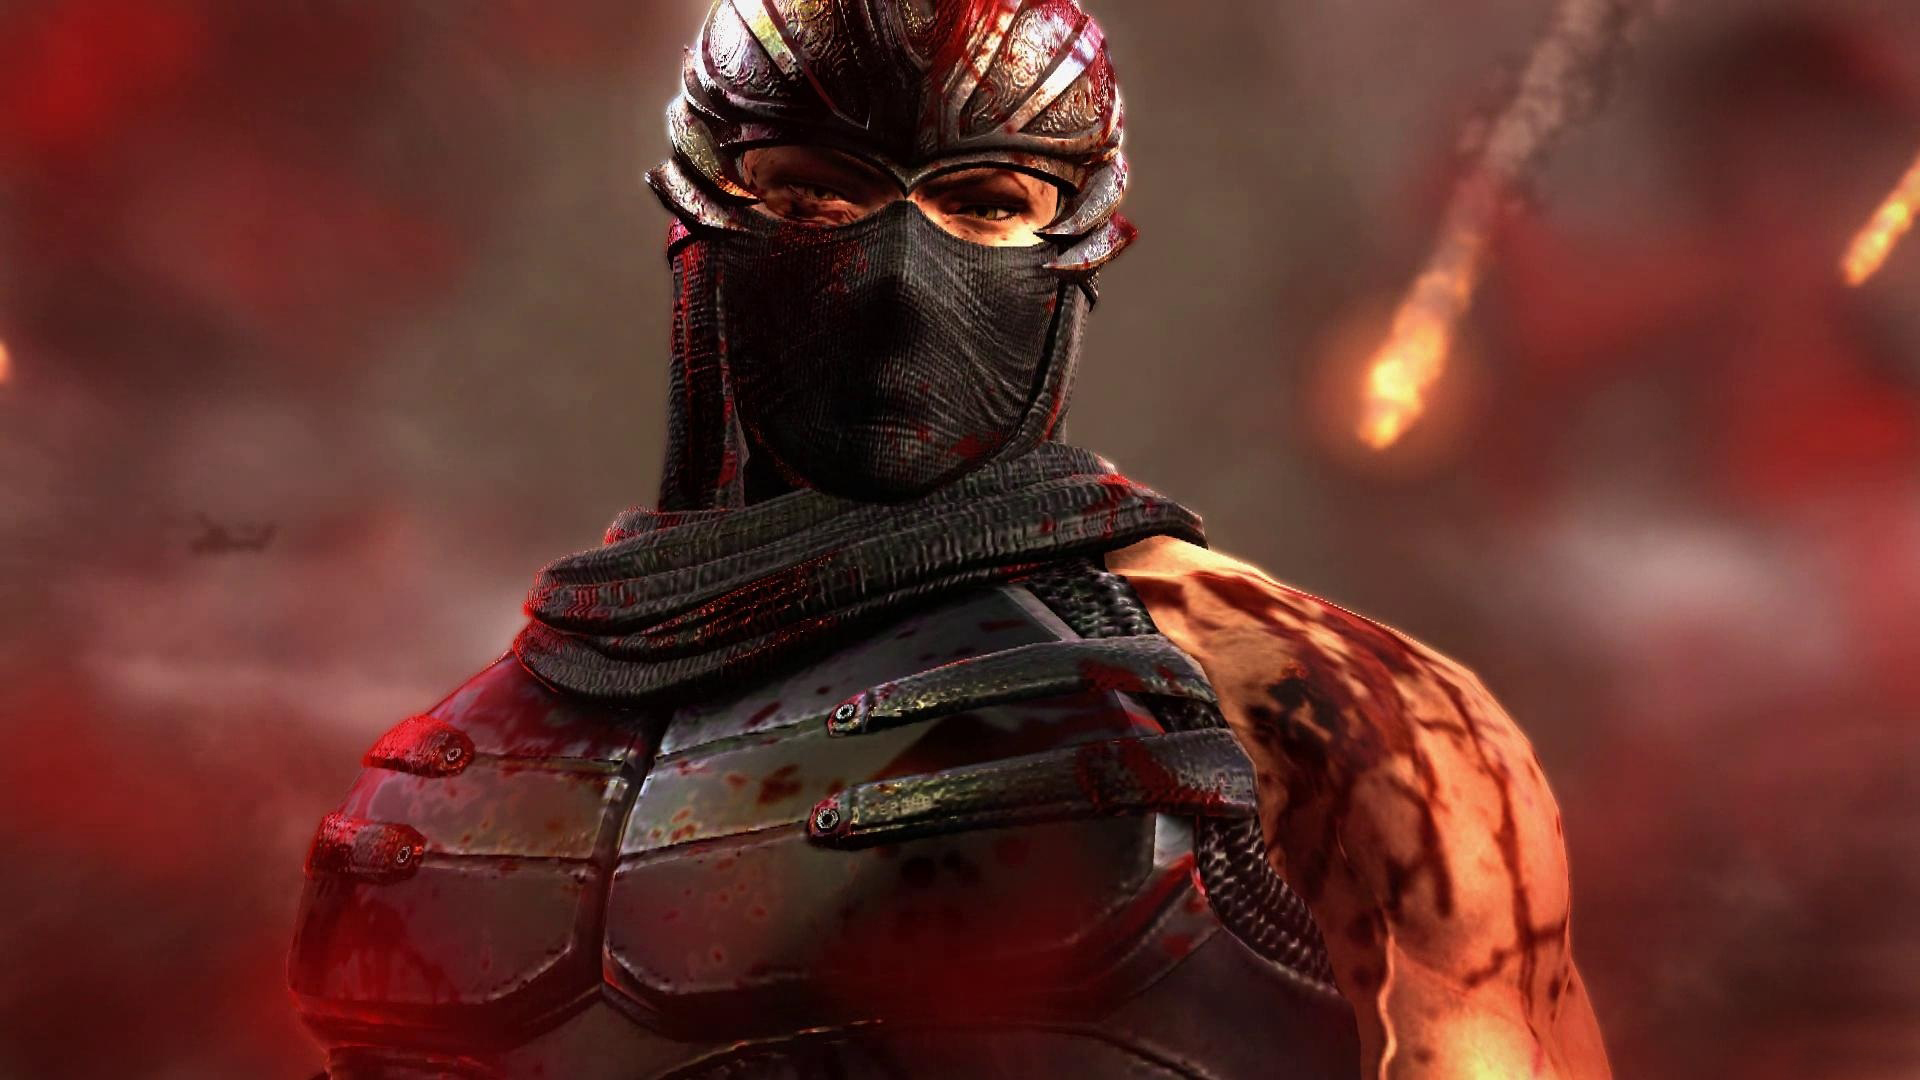 fondo de pantalla de ninja gaiden,superhéroe,personaje de ficción,cg artwork,juego de acción y aventura,figura de acción